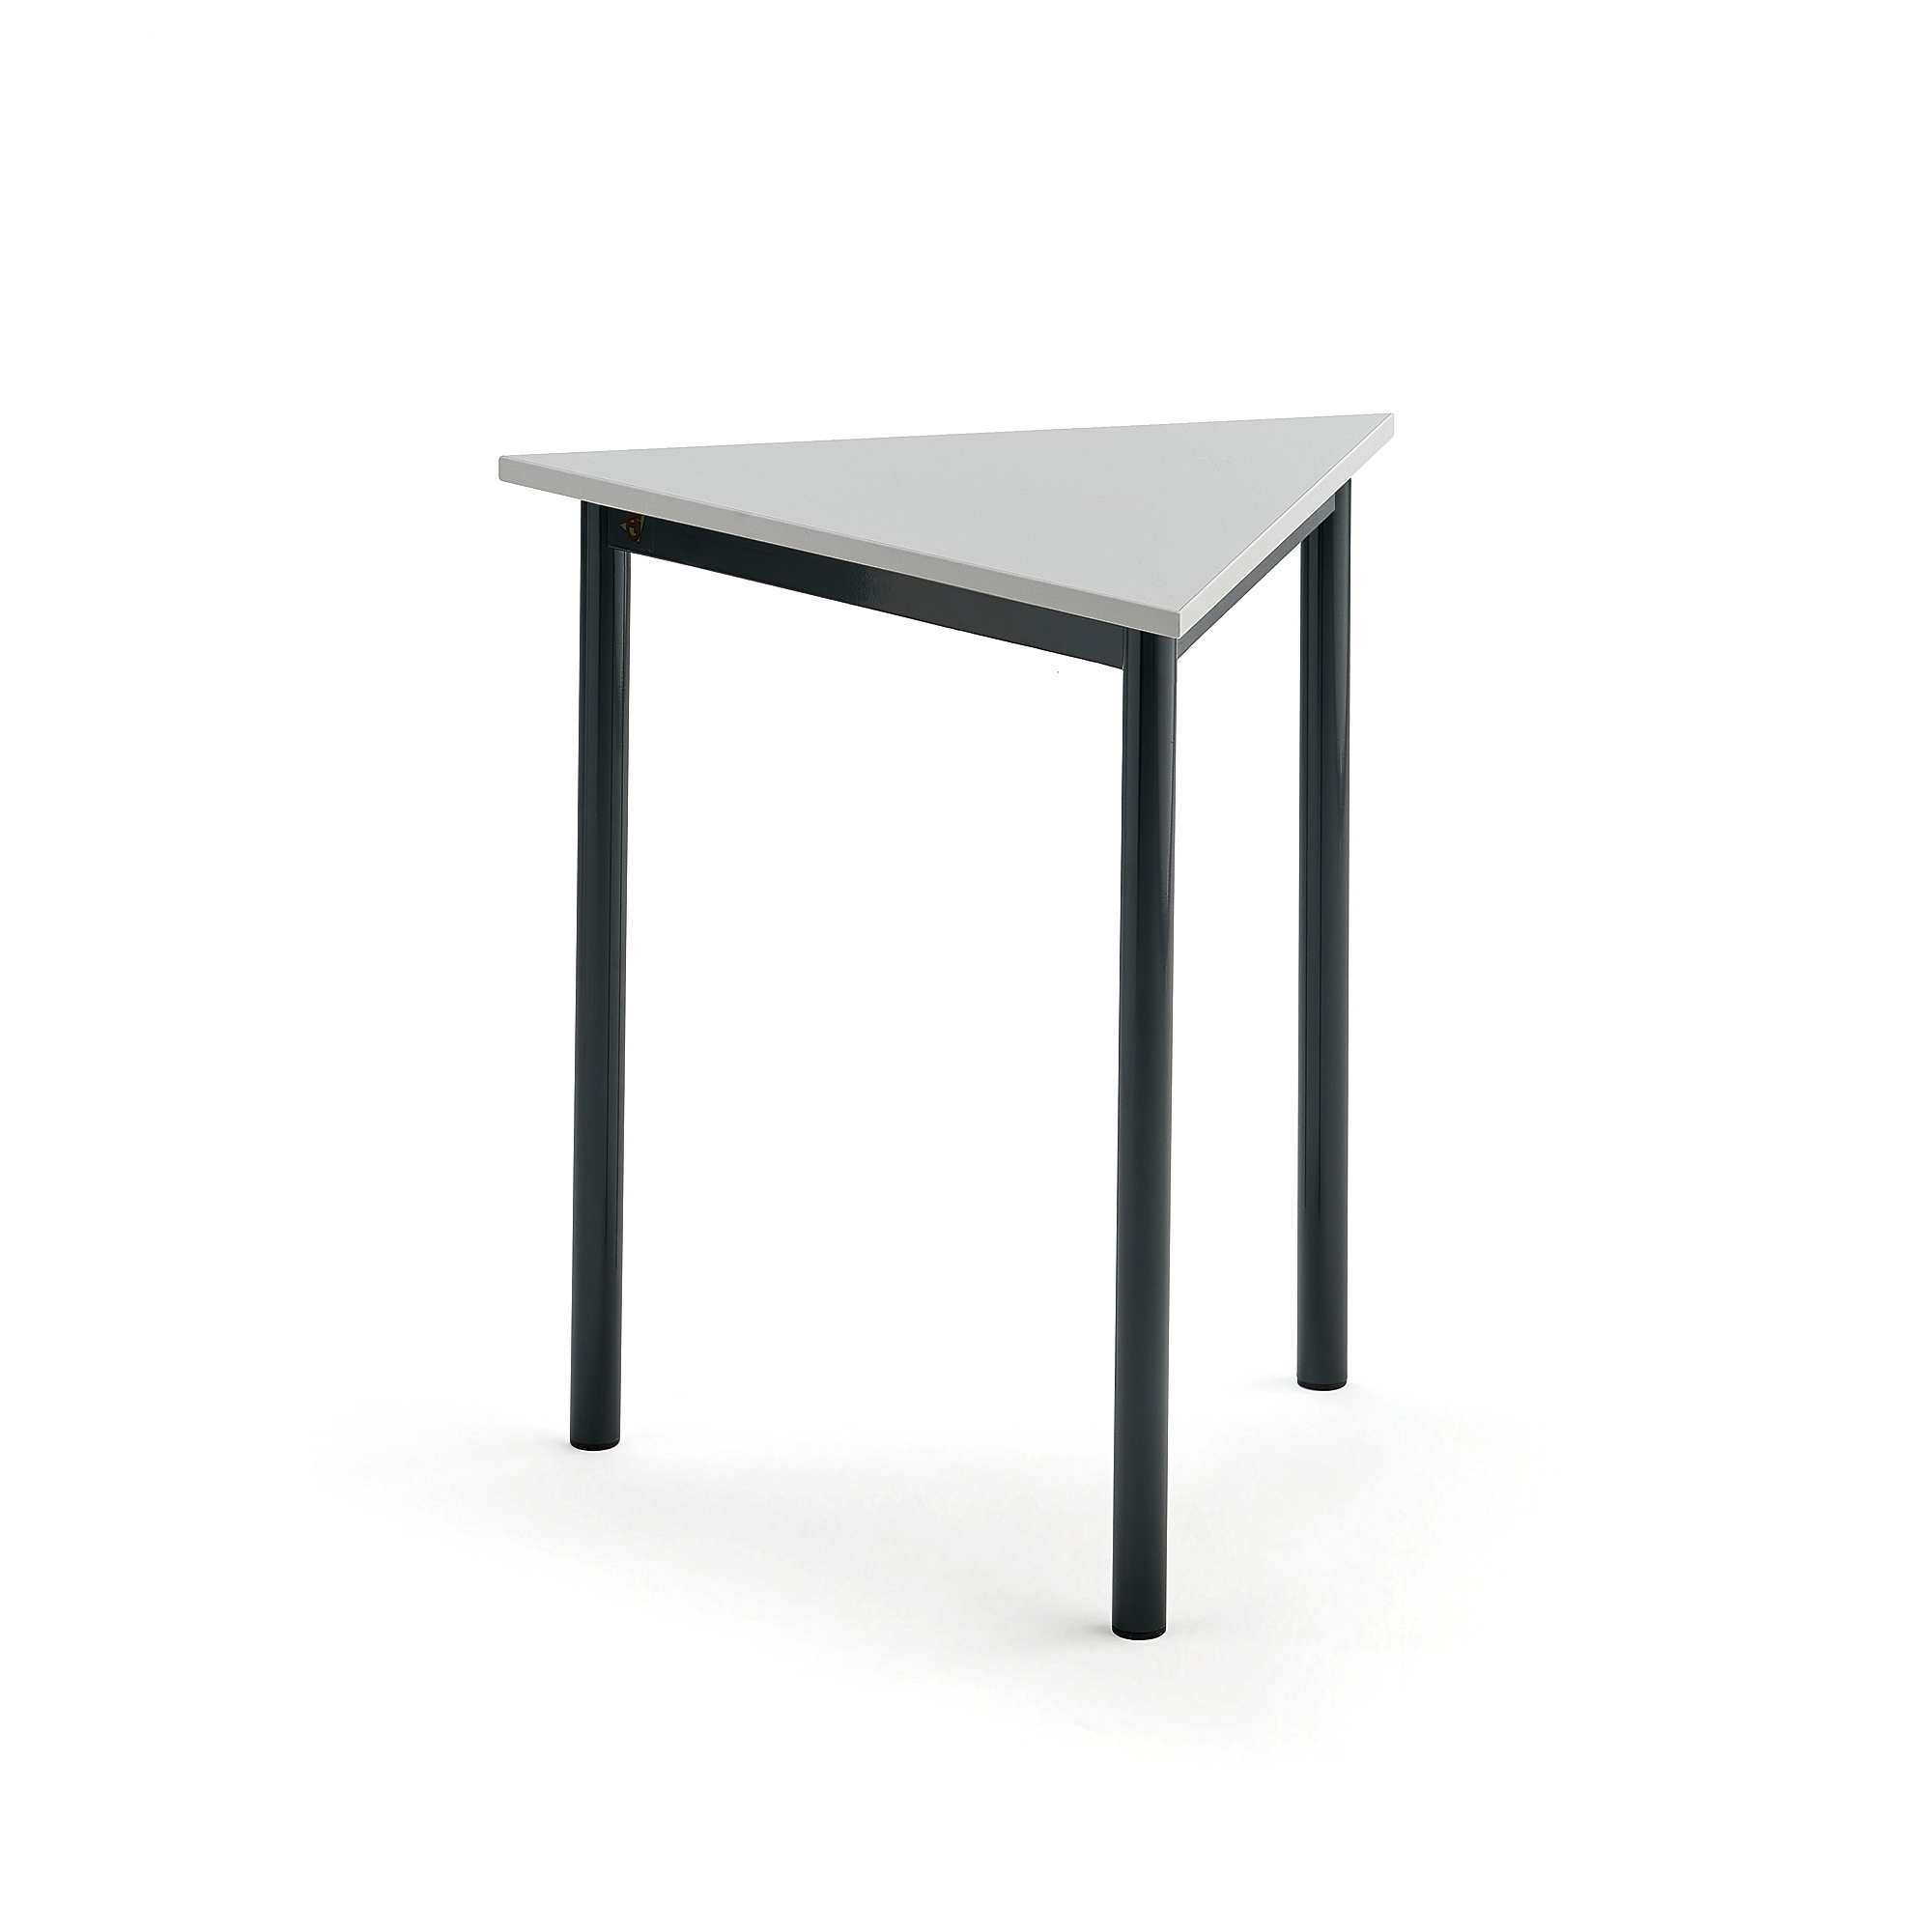 Stůl SONITUS TRIANGEL, 700x700x720 mm, antracitově šedé nohy, HPL deska tlumící hluk, šedá